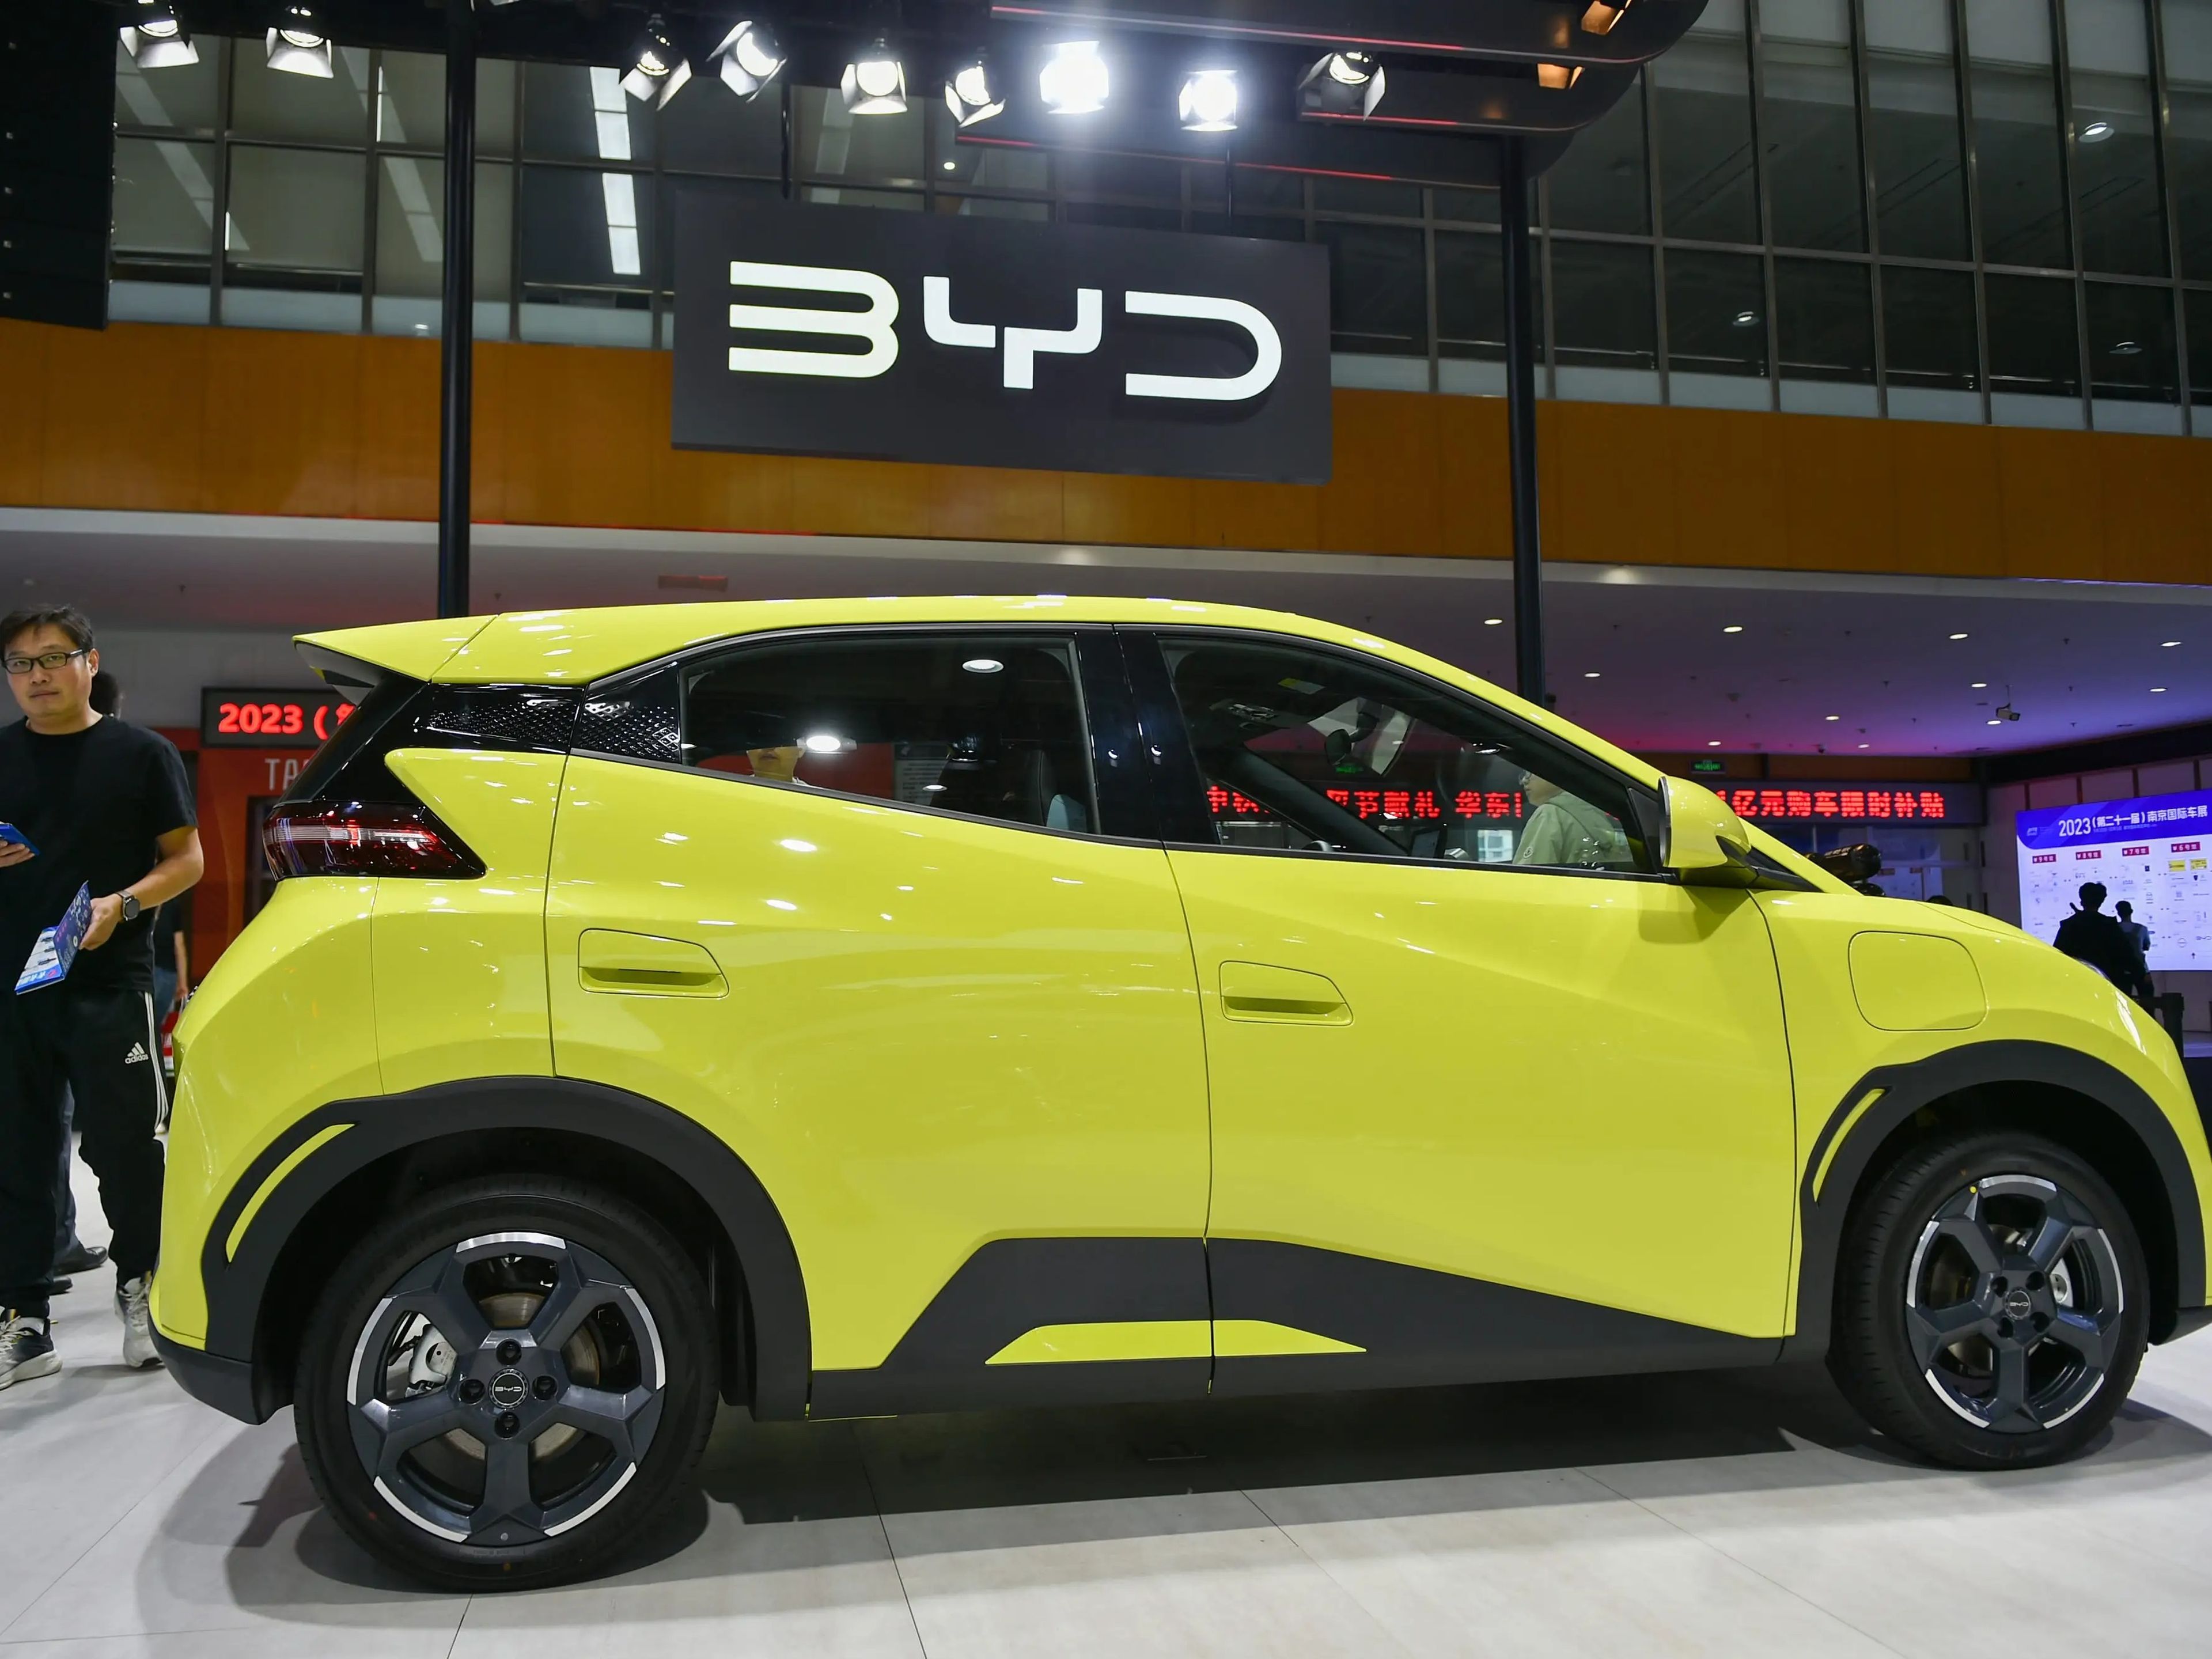 Un coche BYD expuesto en el Salón Internacional del Automóvil de Nanjing (China) este mes.